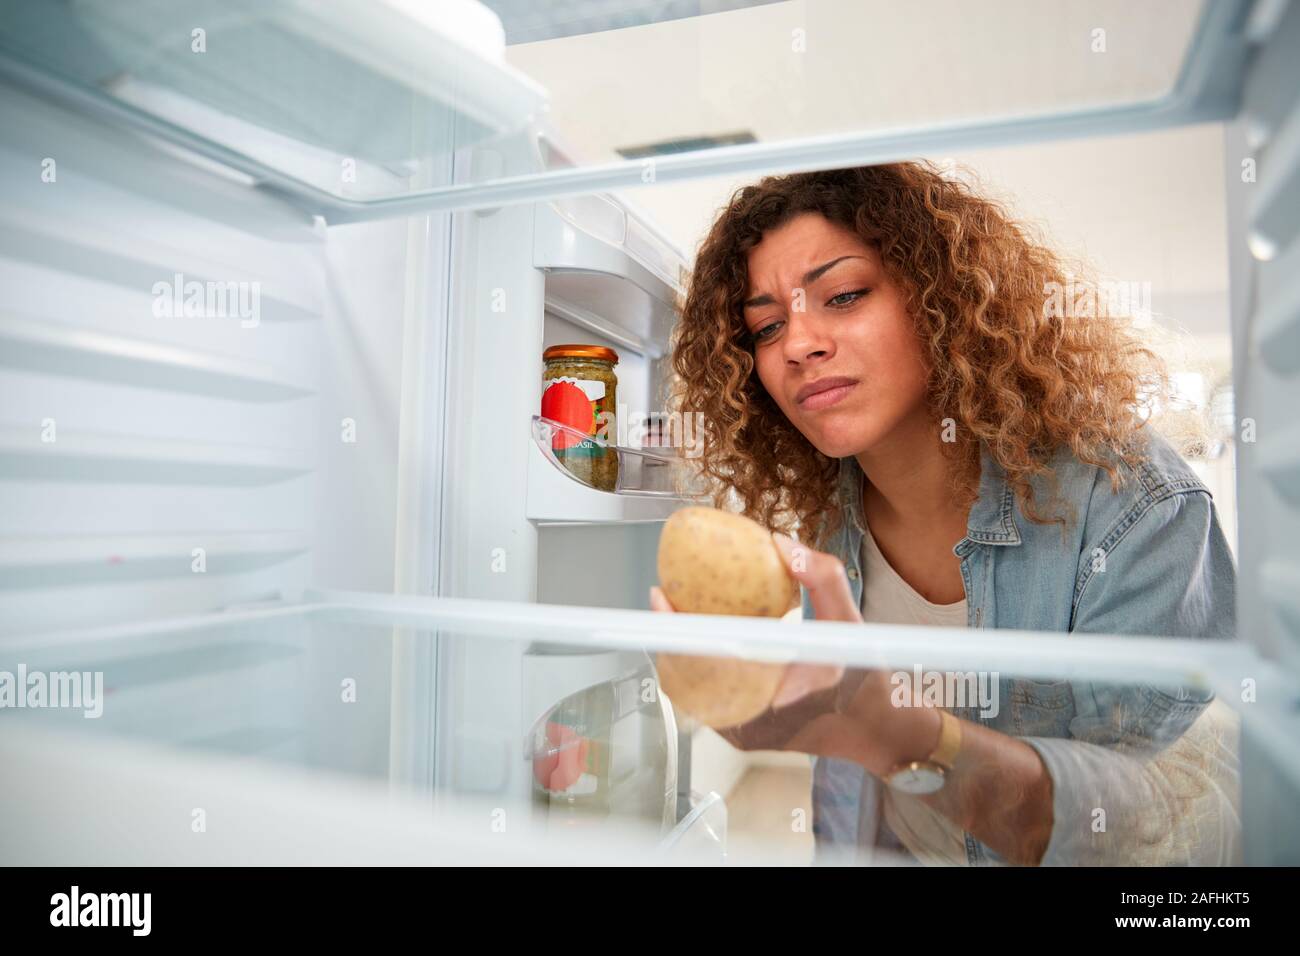 Enttäuscht, Frau auf der Suche nach innen Kühlschrank leer Außer Kartoffel im Regal Stockfoto